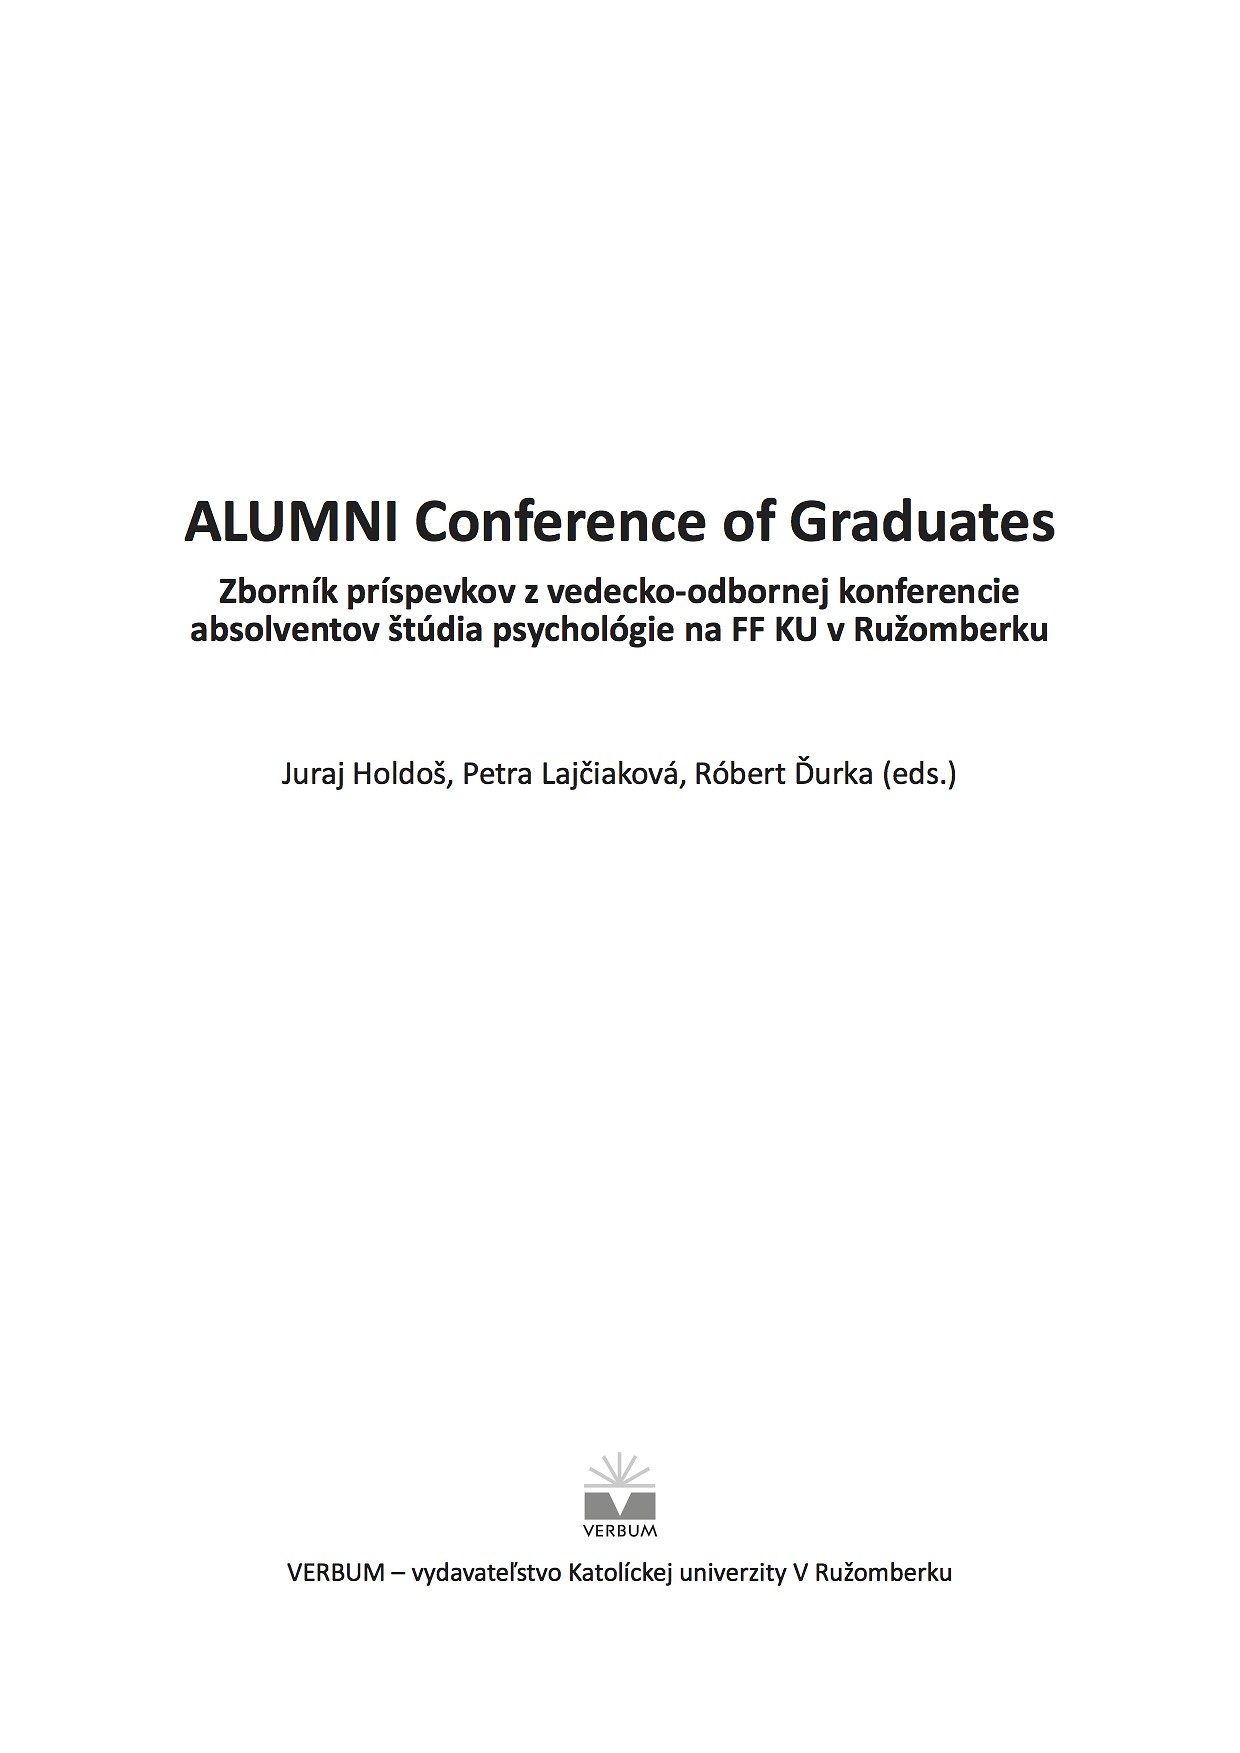 ALUMNI Conference of Graduates. Zborník príspevkov z vedecko-odbornej konferencie absolventov štúdia psychológie na FF KU v Ružomberku